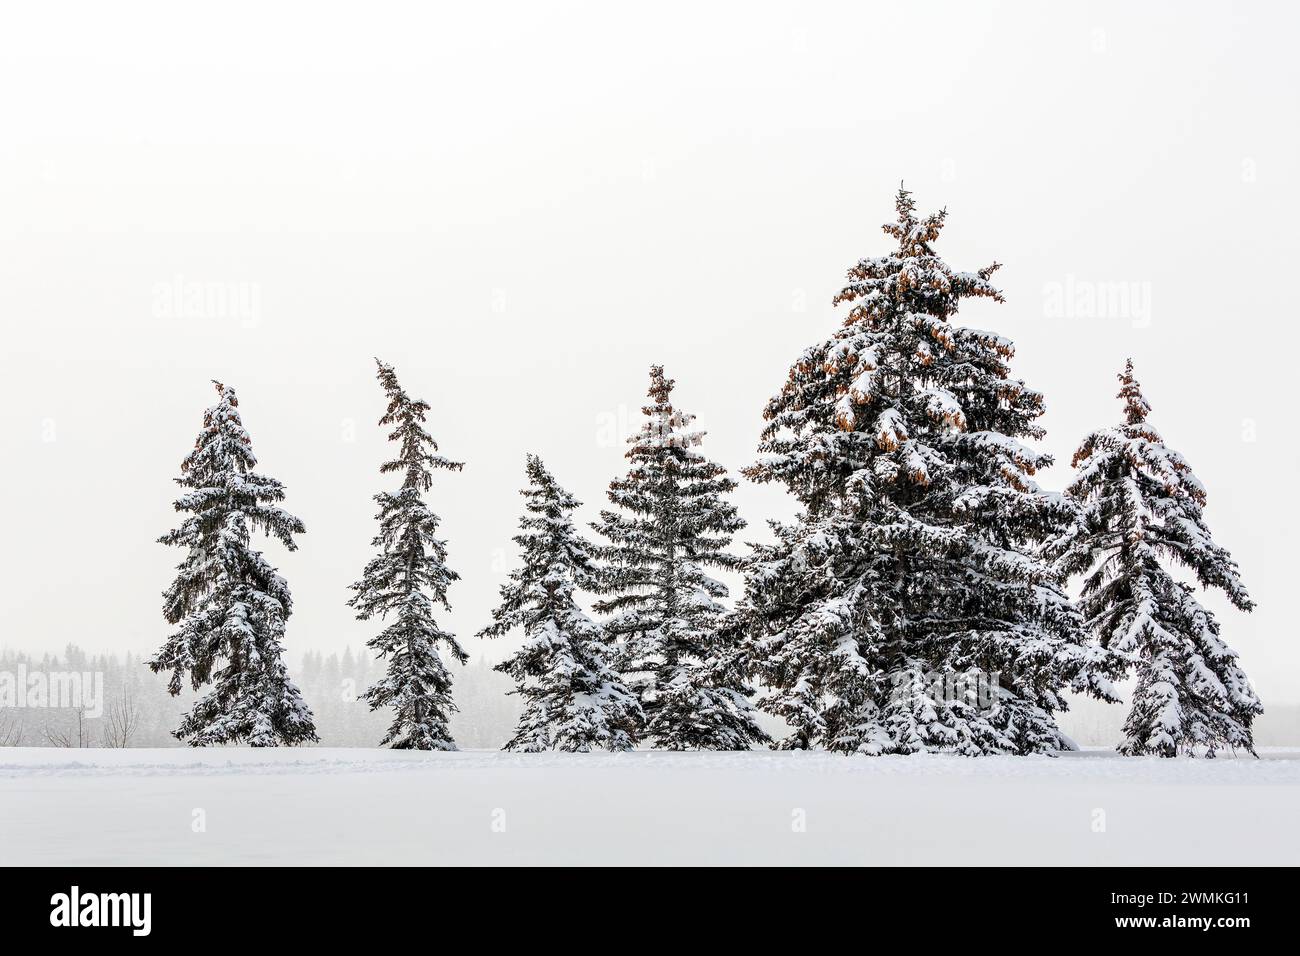 Eine Reihe leicht schneebedeckter immergrüner Bäume auf einem schneebedeckten Feld mit grauem Himmel; Calgary, Alberta, Kanada Stockfoto